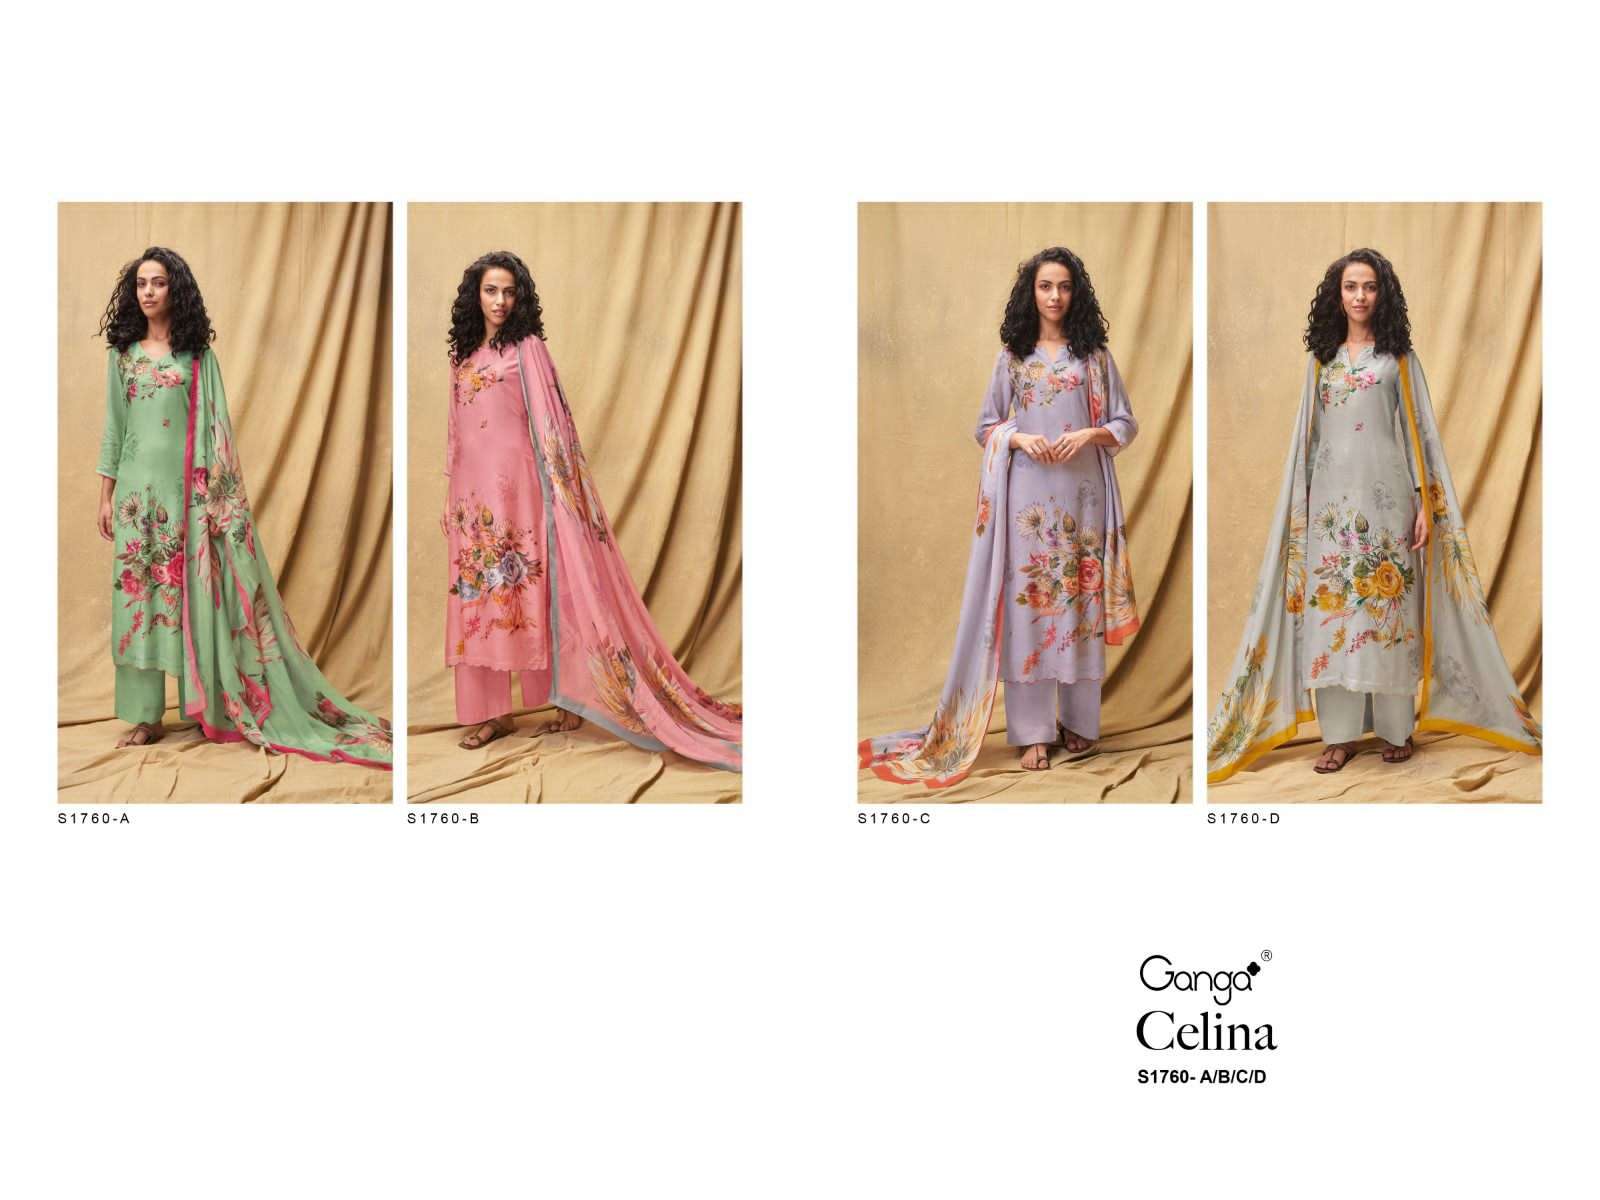 ganga celina 1760 series unstitched designer salwar kameez catalogue manufacturer surat 